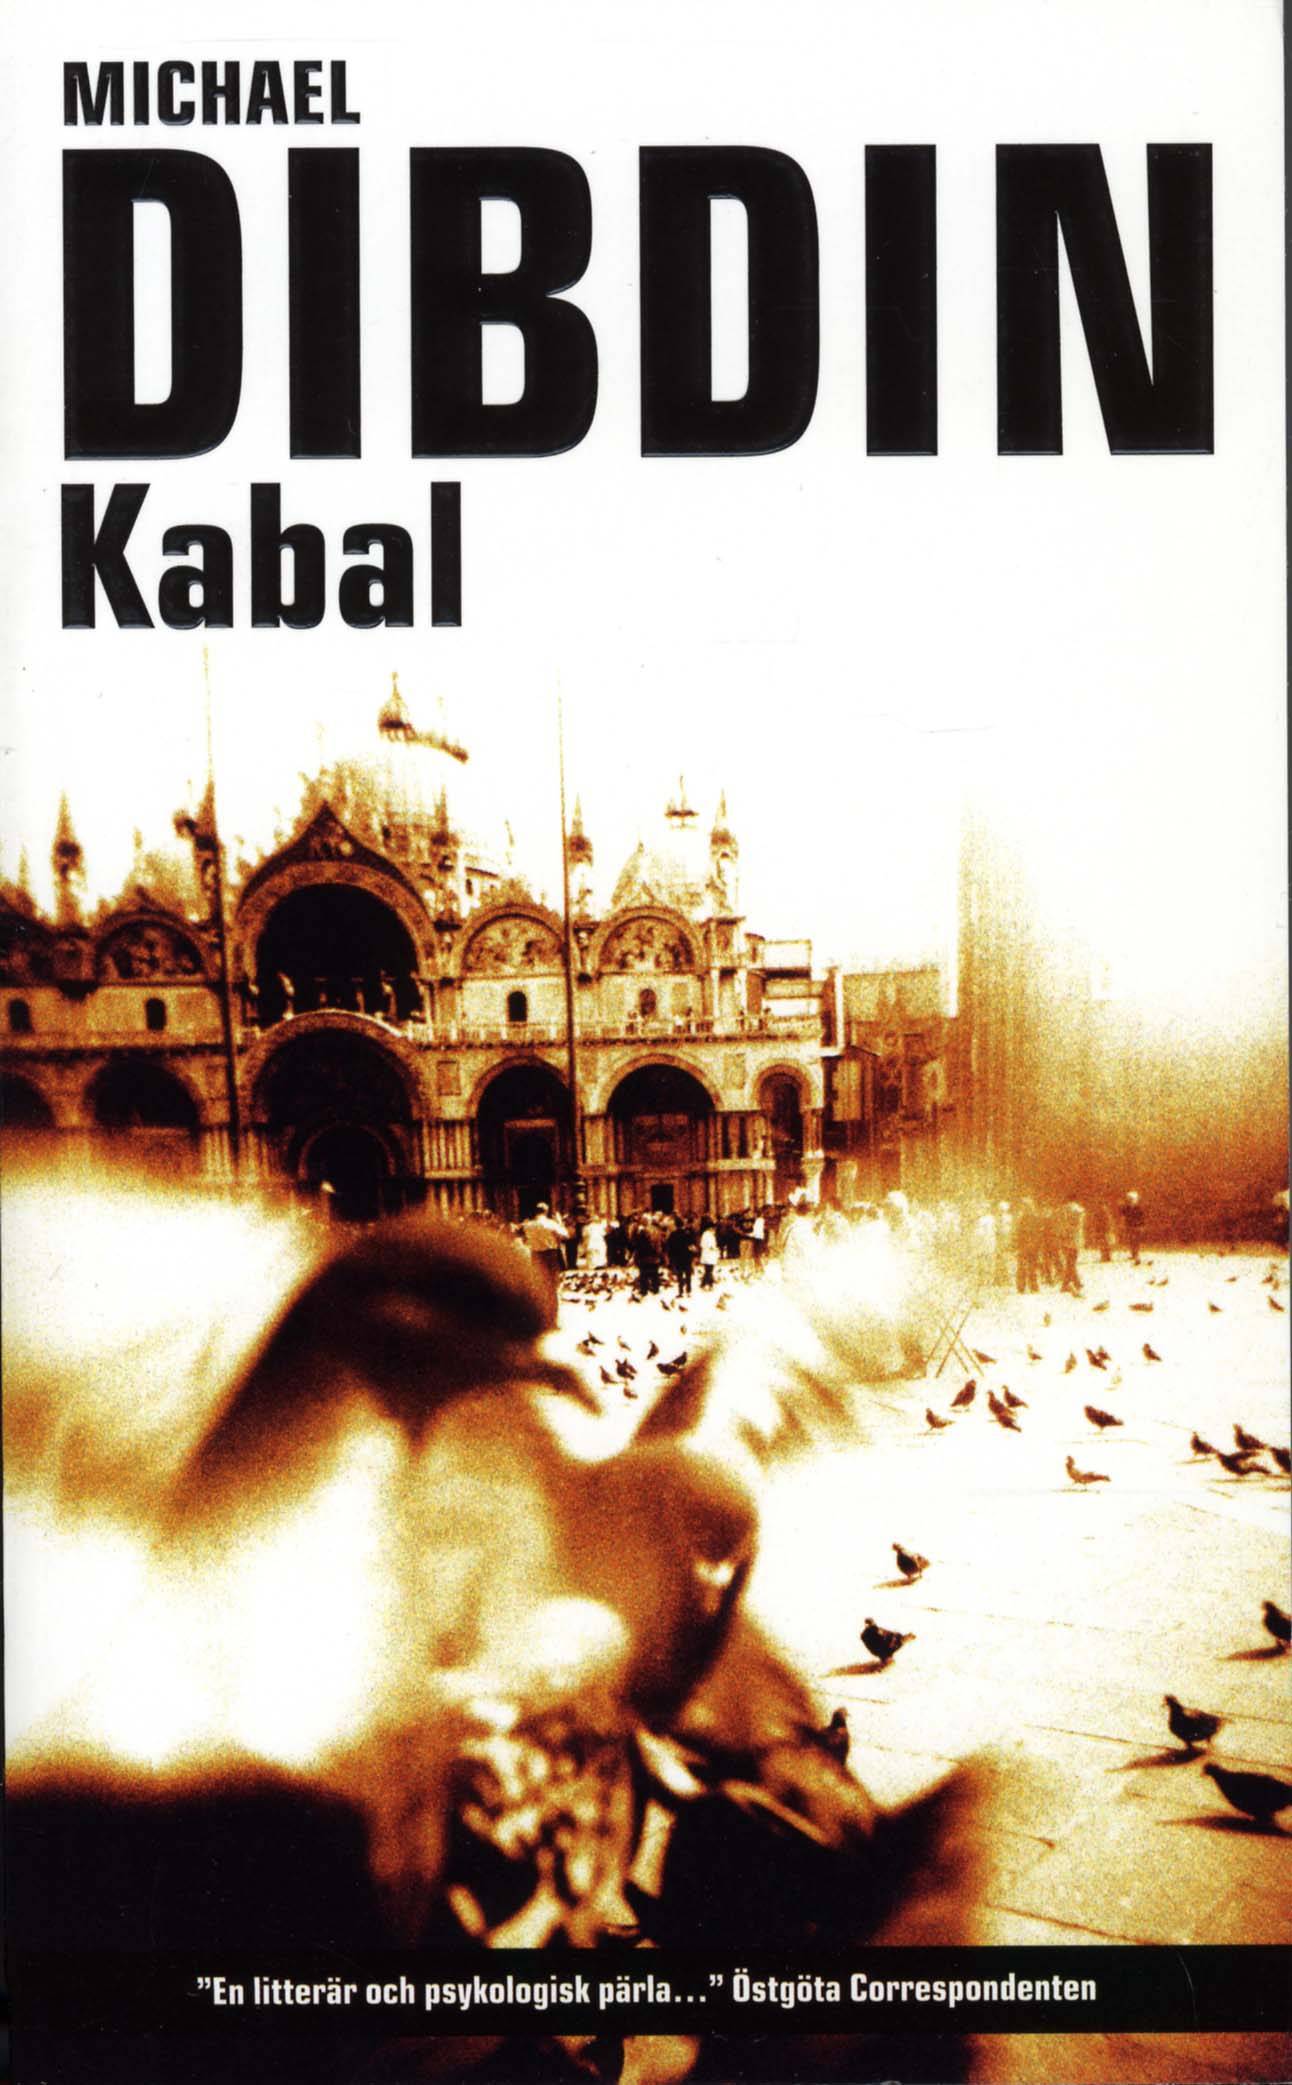 Kabal